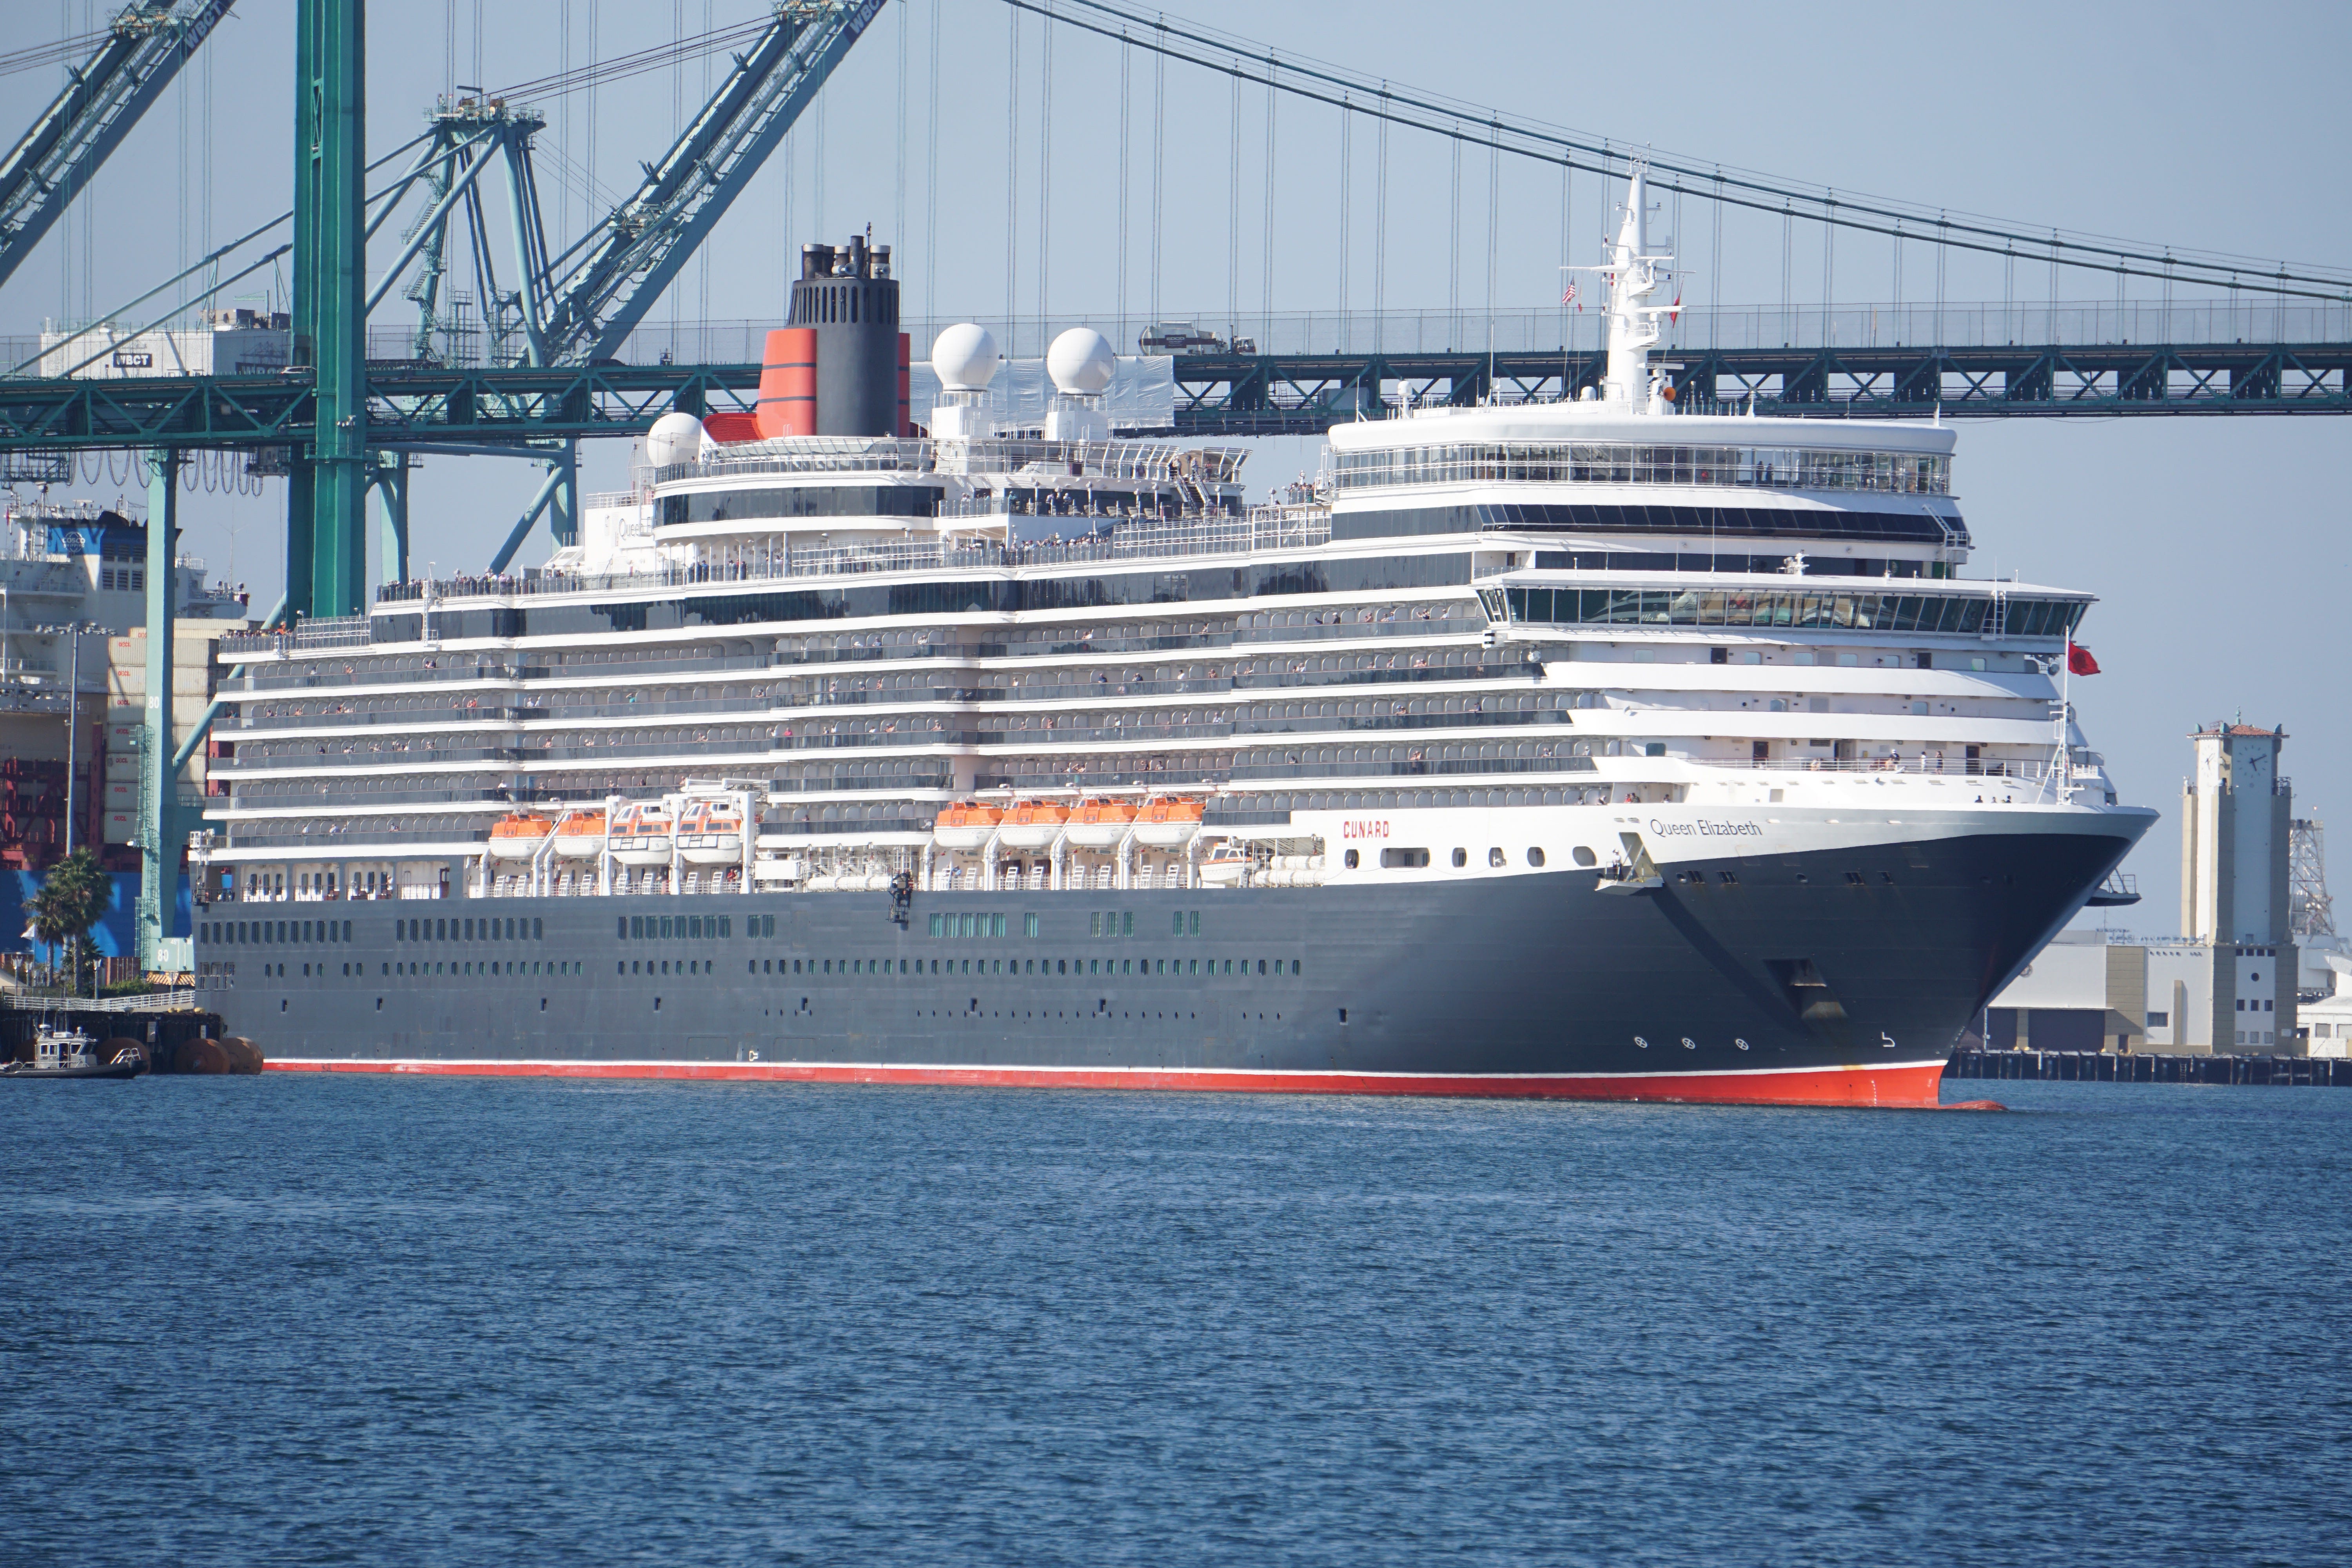 Cruise ship tour Photos of Cunard Line's Queen Elizabeth